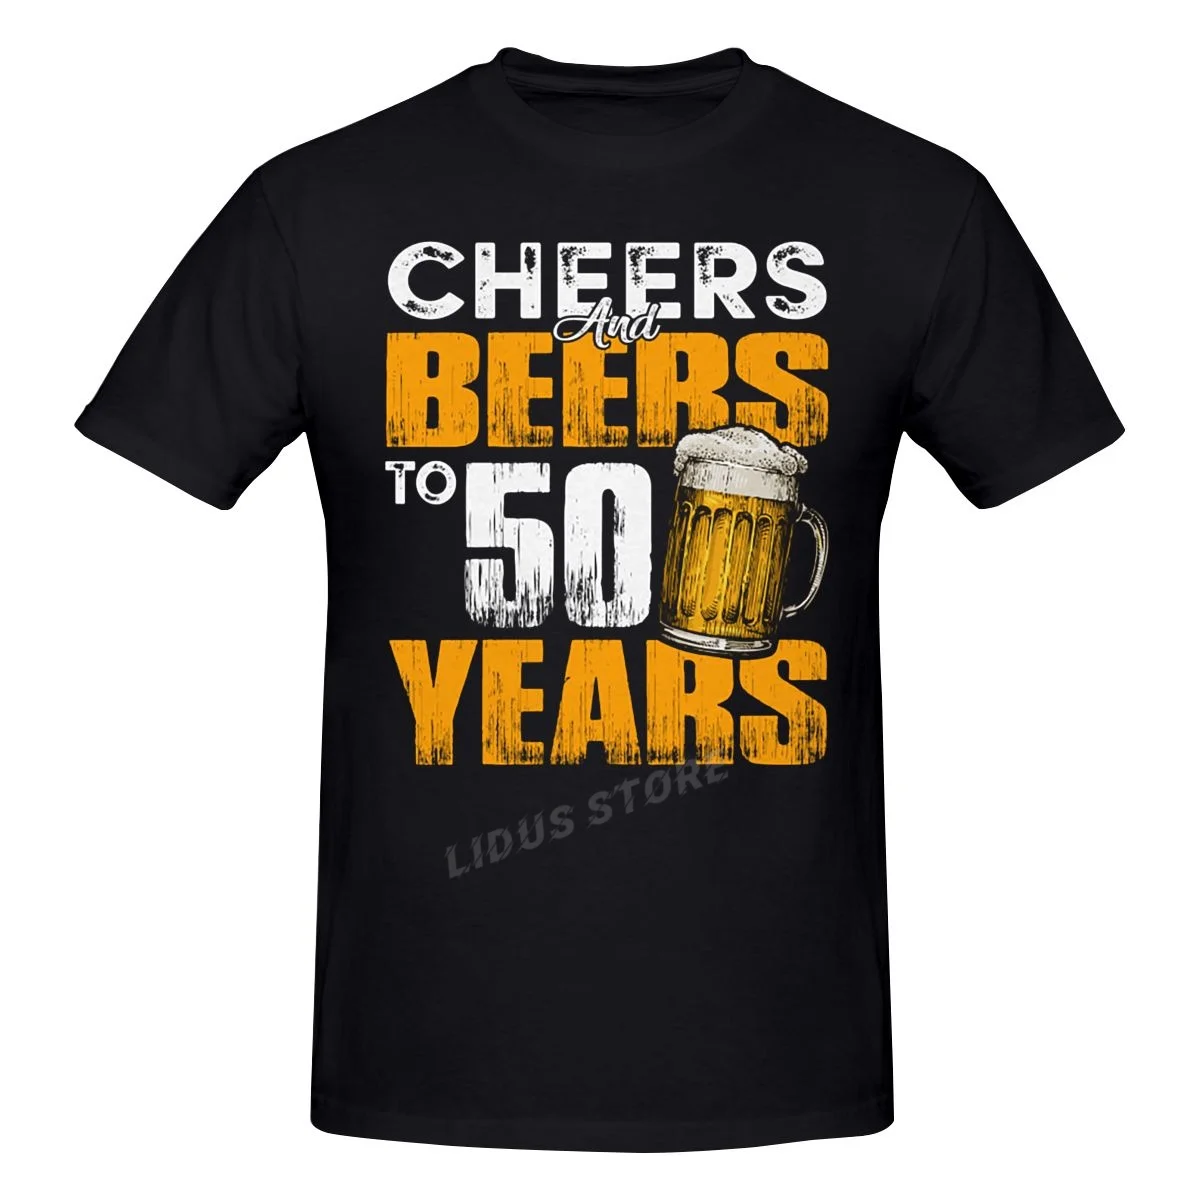 

Футболка с надписью «Cheers And Beer To 50 лет», забавная тенниска на 50-й день рождения с изображением любителей пива в стиле Харадзюку, модная класси...